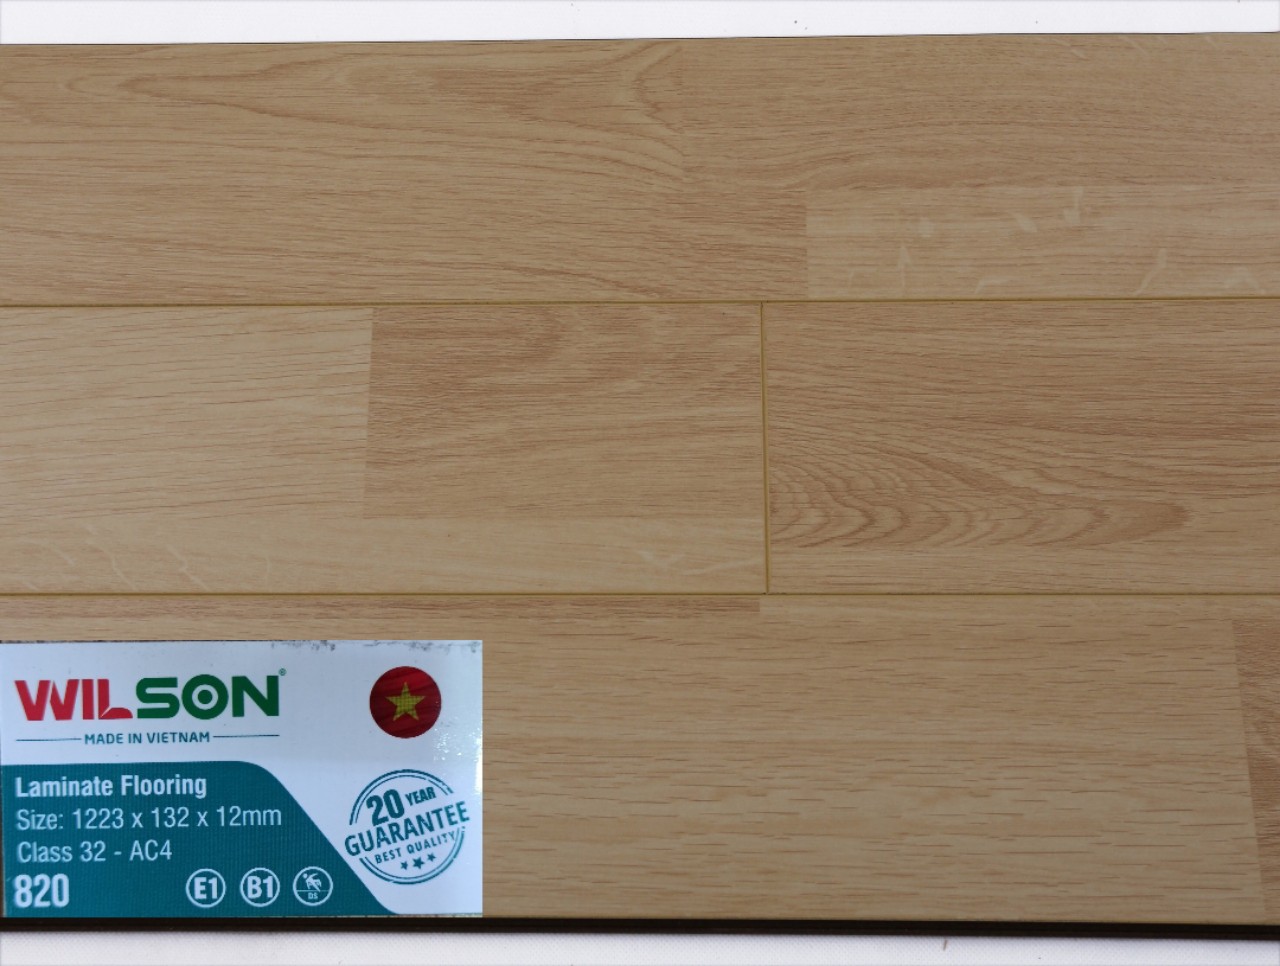 Sàn gỗ Wilson 12mm 820